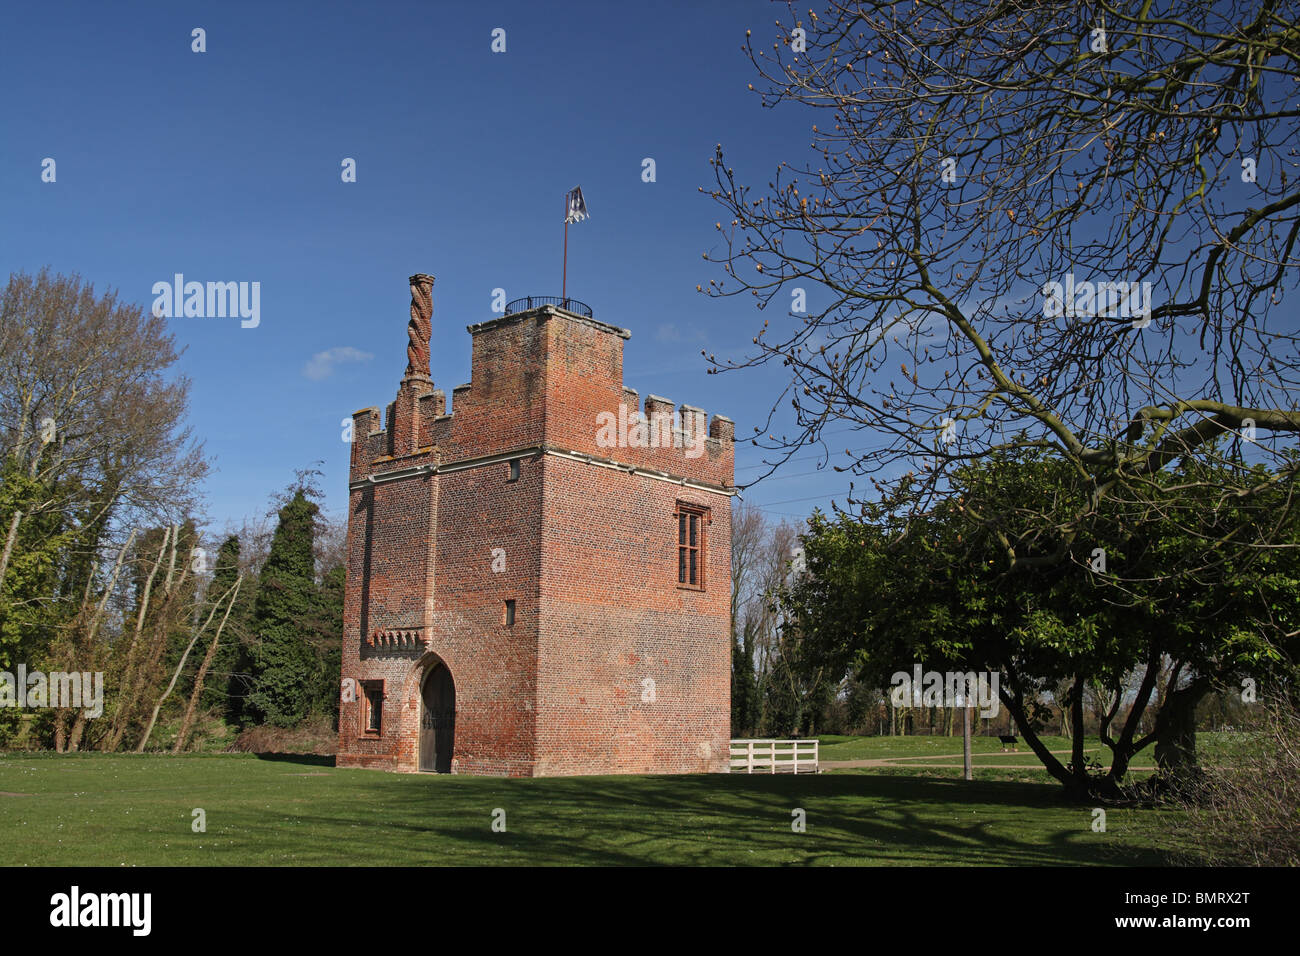 Rye House Torhaus, gebaut im Jahre 1443, Hoddesdon, Hertfordshire, England.  Rye House Plot von 1683 beteiligt. Stockfoto